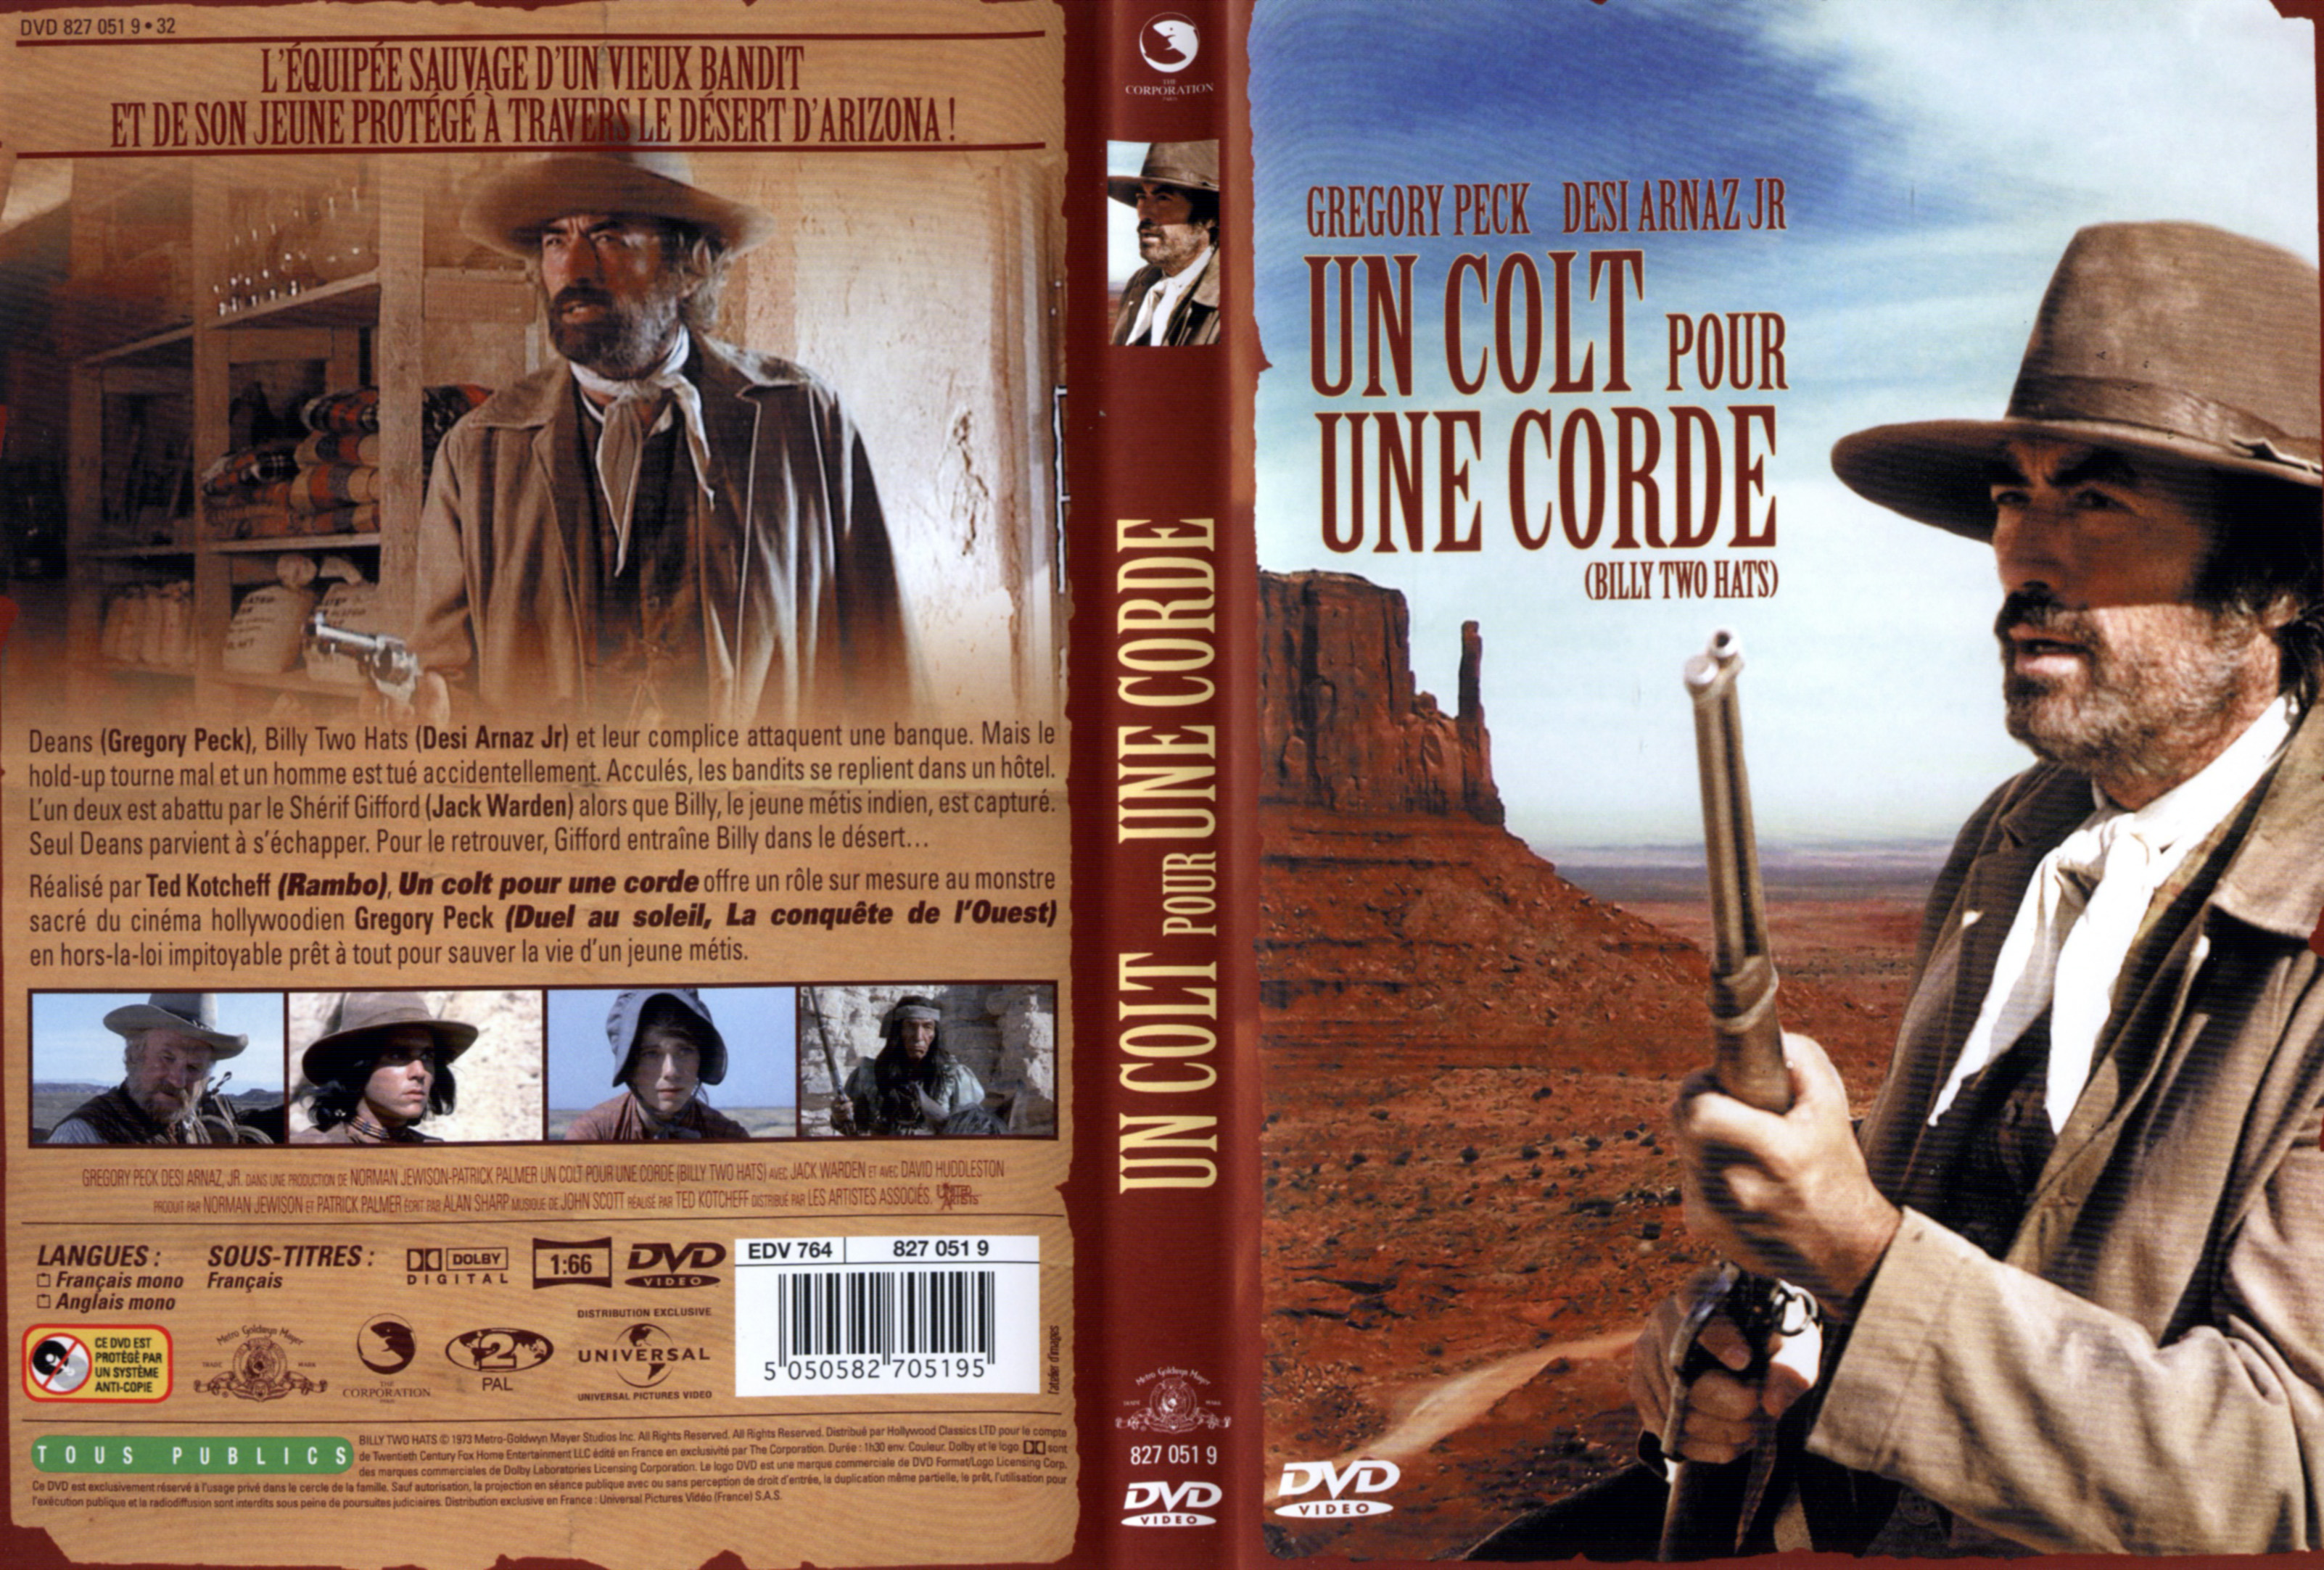 Jaquette DVD Un colt pour une corde